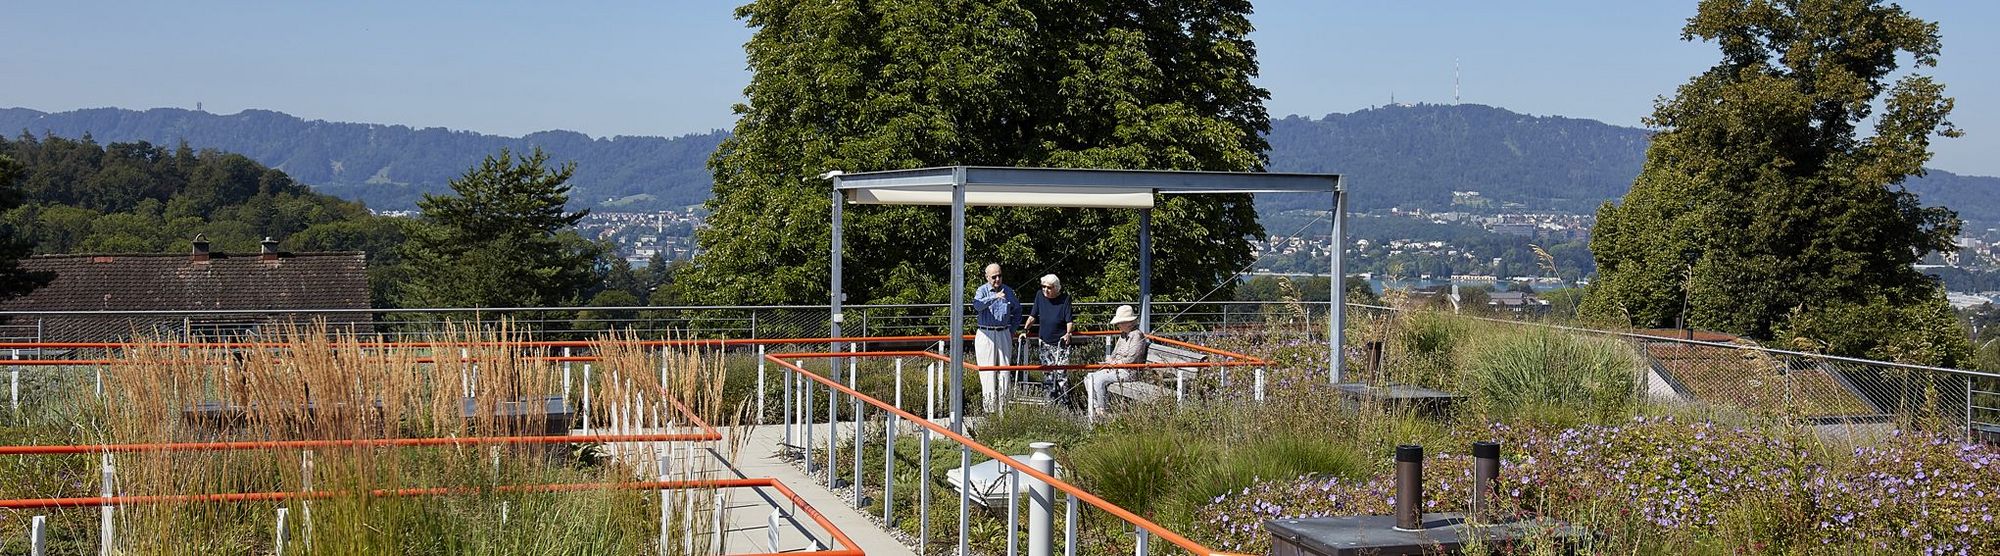 Blick auf den Garten der Mühlehalde mit Gehwegen und orangefarbenen Handläufen, im Pavillon sind drei Bewohnerin in Gespräch, der Blick vom Garten geht über die Dächer von Zürich.